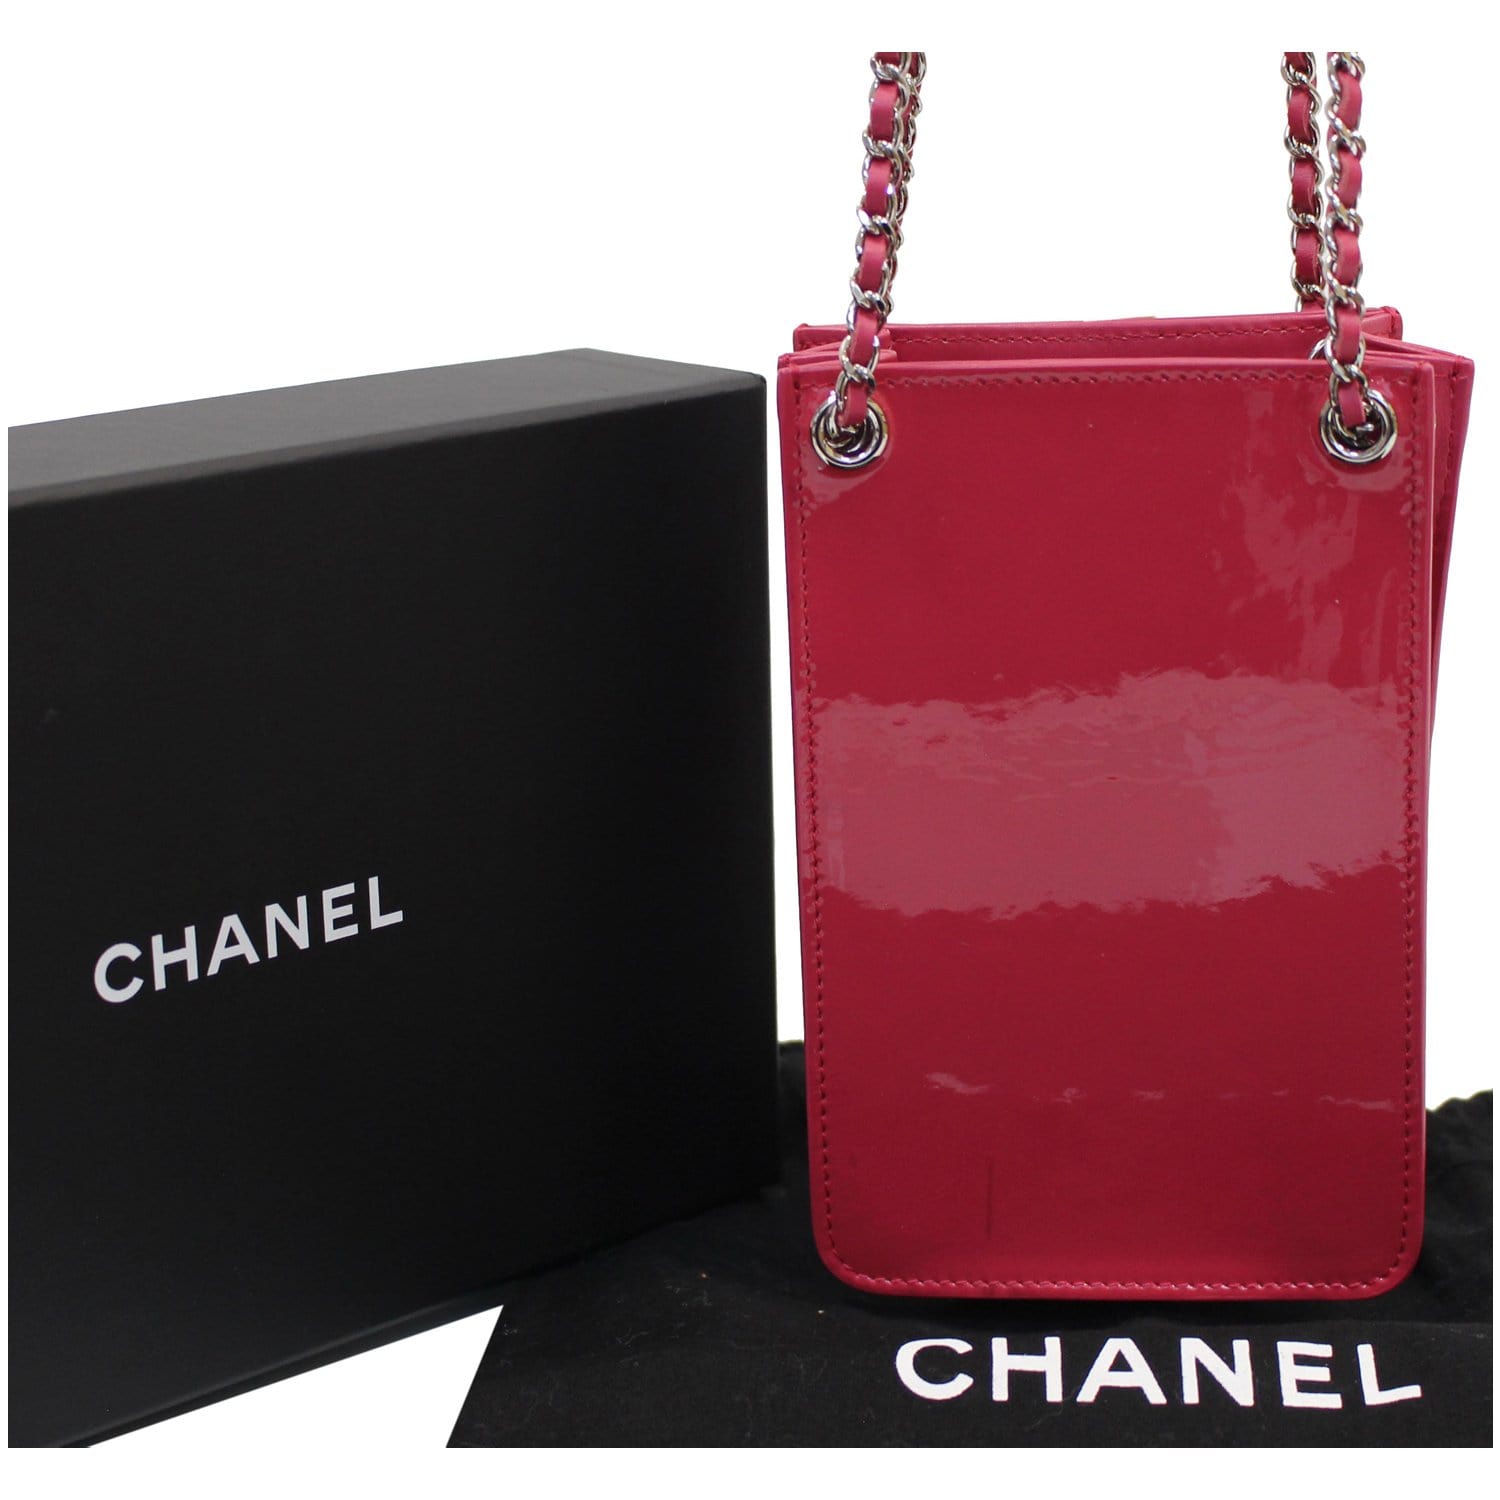 Buy CHANEL @ Set Of 3 Leather Handbag/Slingbag/Shoulder Bag/Wallet For  Women (Red),CHB-002 at